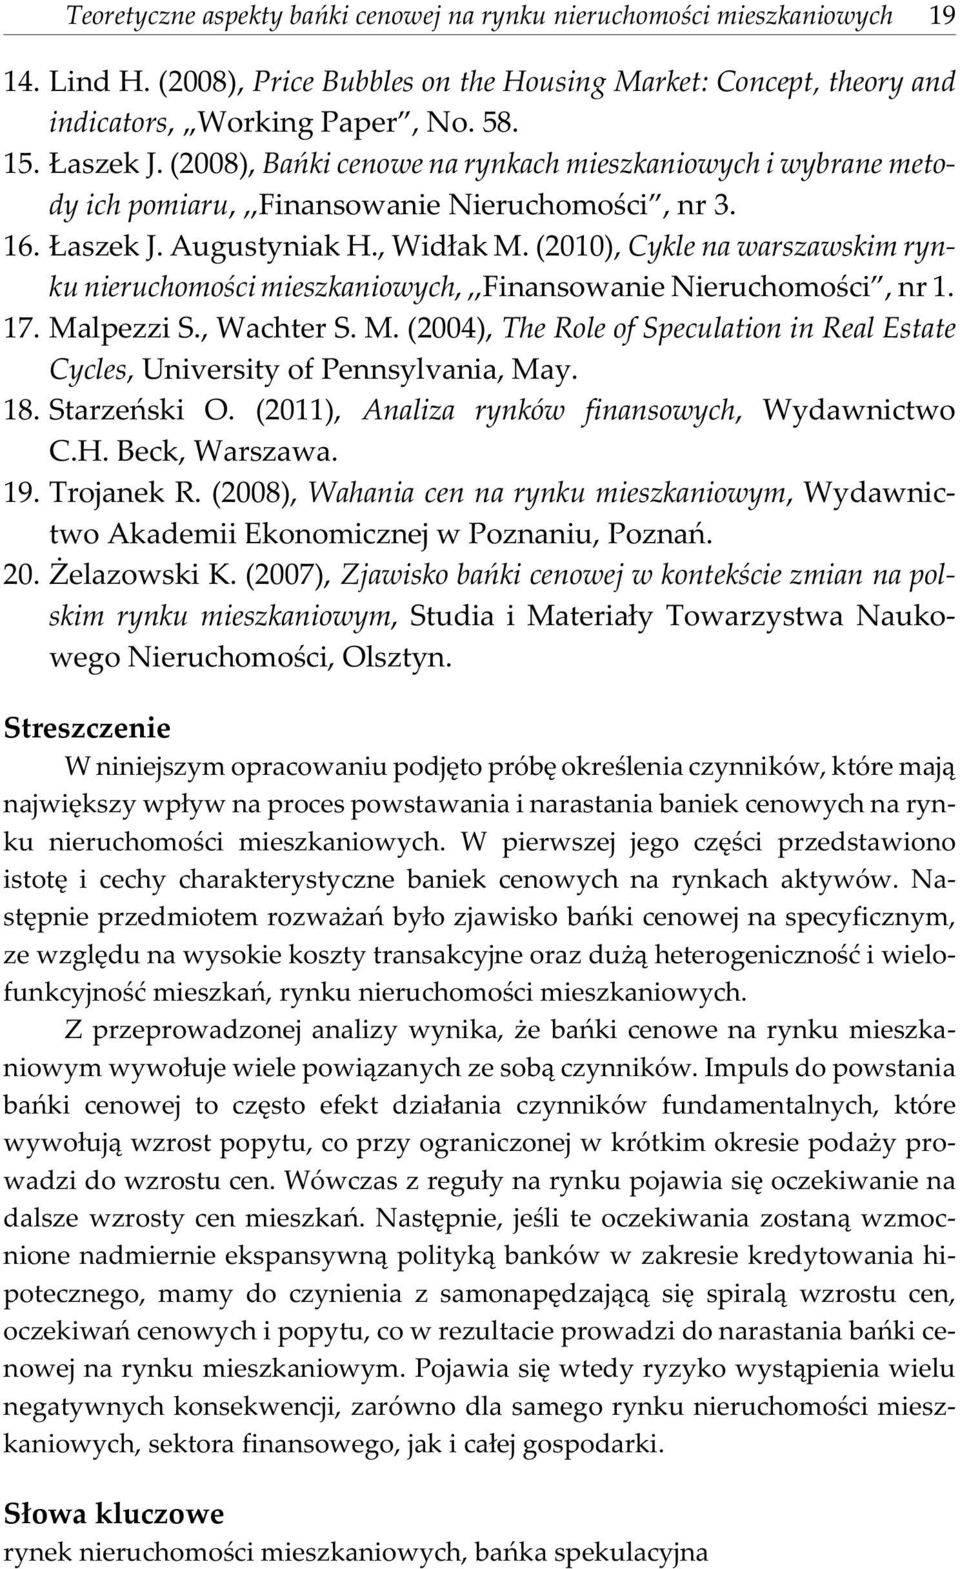 (2010), Cykle na warszawskim rynku nieruchomoœci mieszkaniowych,,,finansowanie Nieruchomoœci, nr 1. 17. Malpezzi S., Wachter S. M. (2004), The Role of Speculation in Real Estate Cycles, University of Pennsylvania, May.